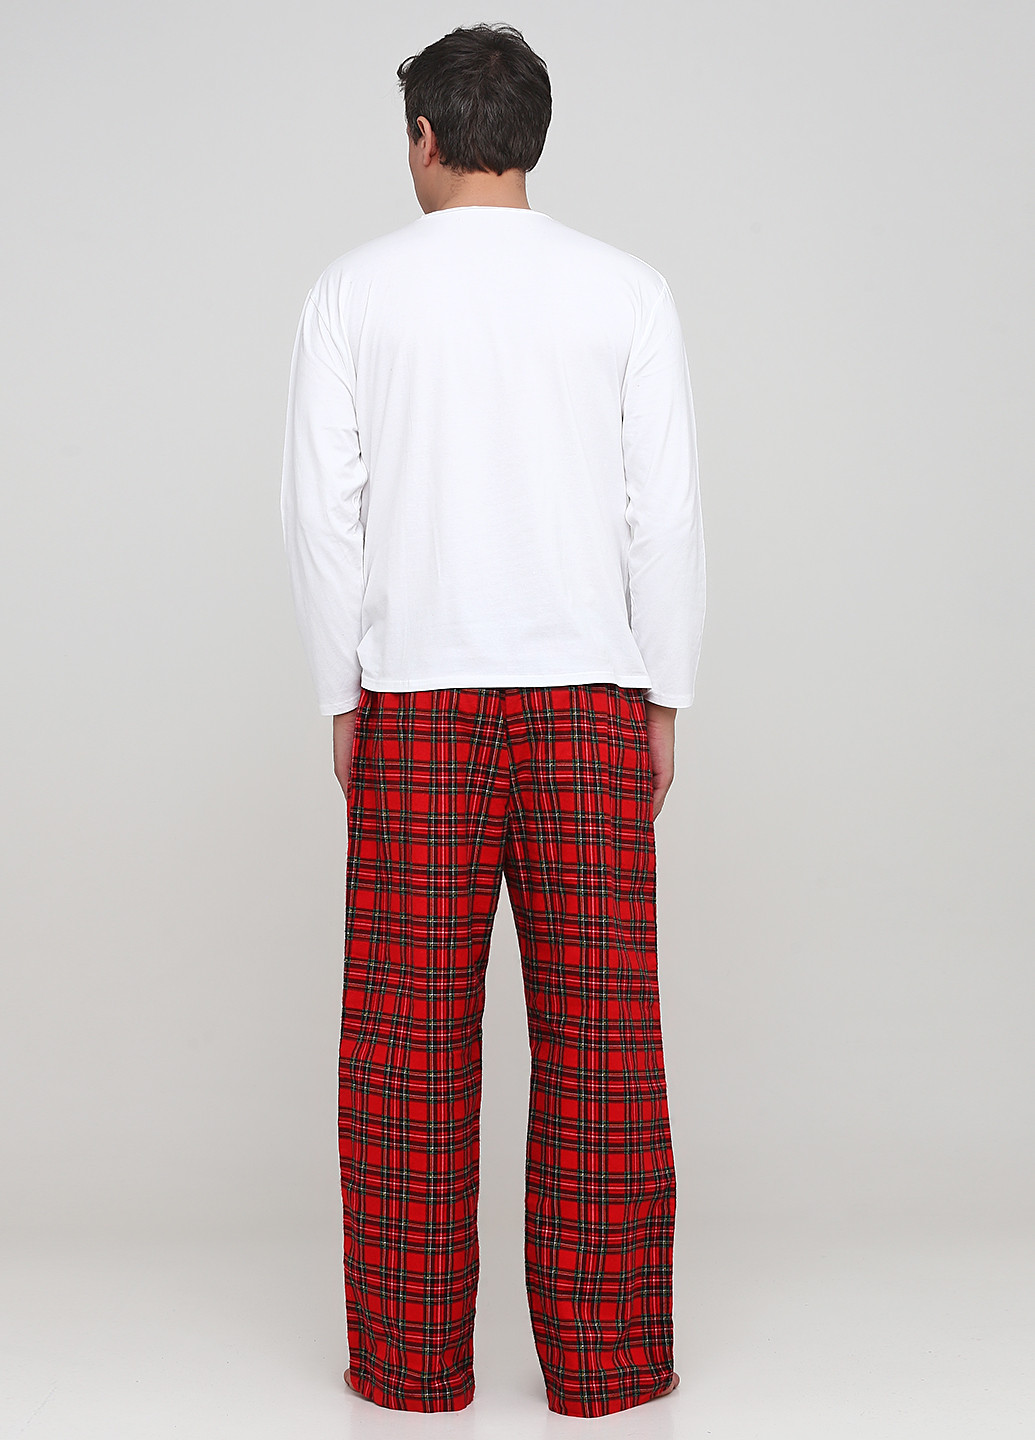 Пижама (лонгслив, брюки) Signature лонгслив + брюки рисунок красная домашняя трикотаж, хлопок